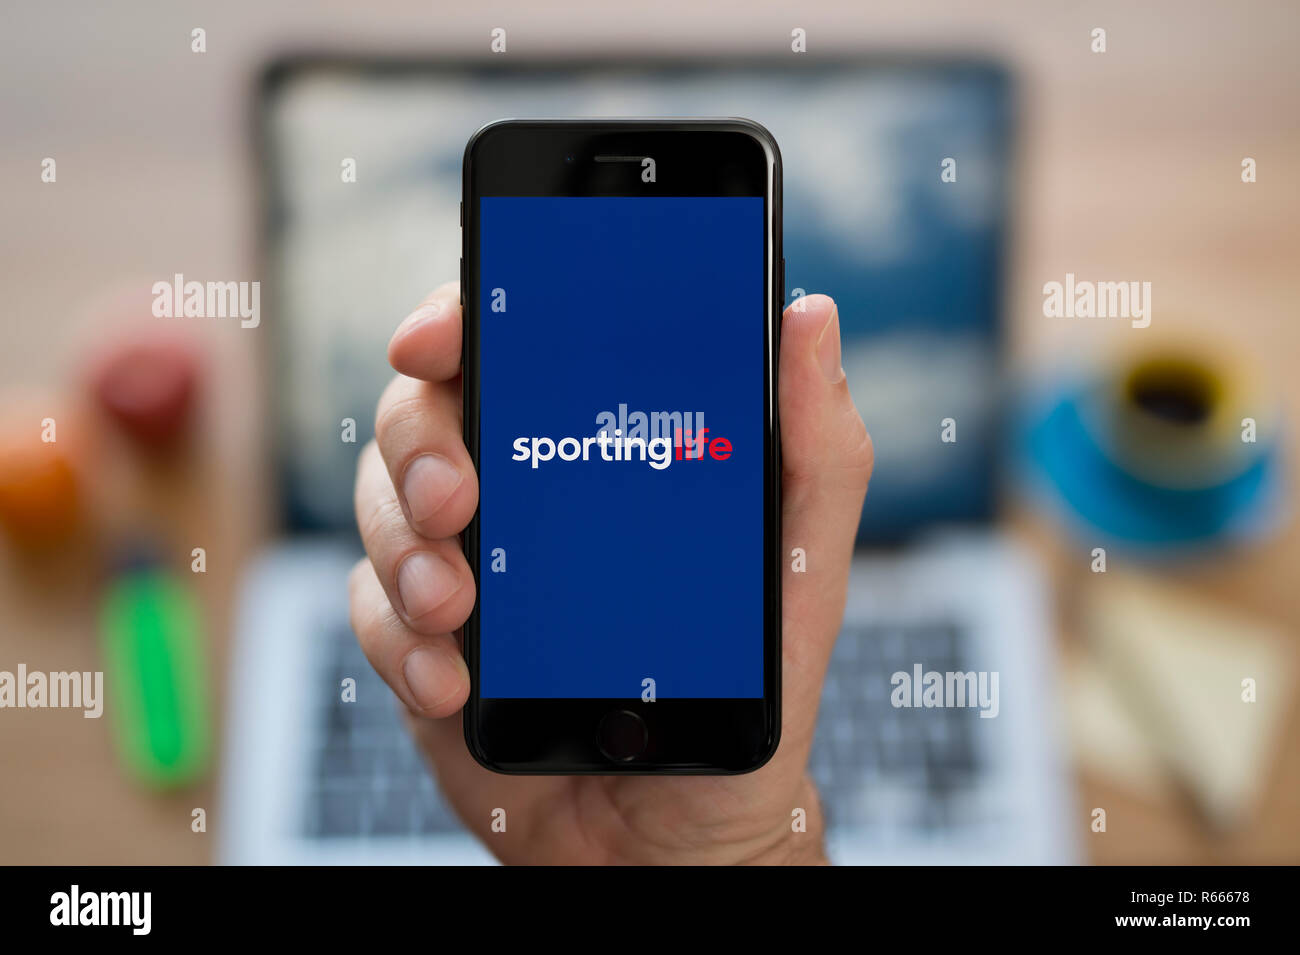 Un uomo guarda al suo iPhone che visualizza lo Sporting Life logo, mentre se ne sta seduto alla sua scrivania per computer (solo uso editoriale). Foto Stock